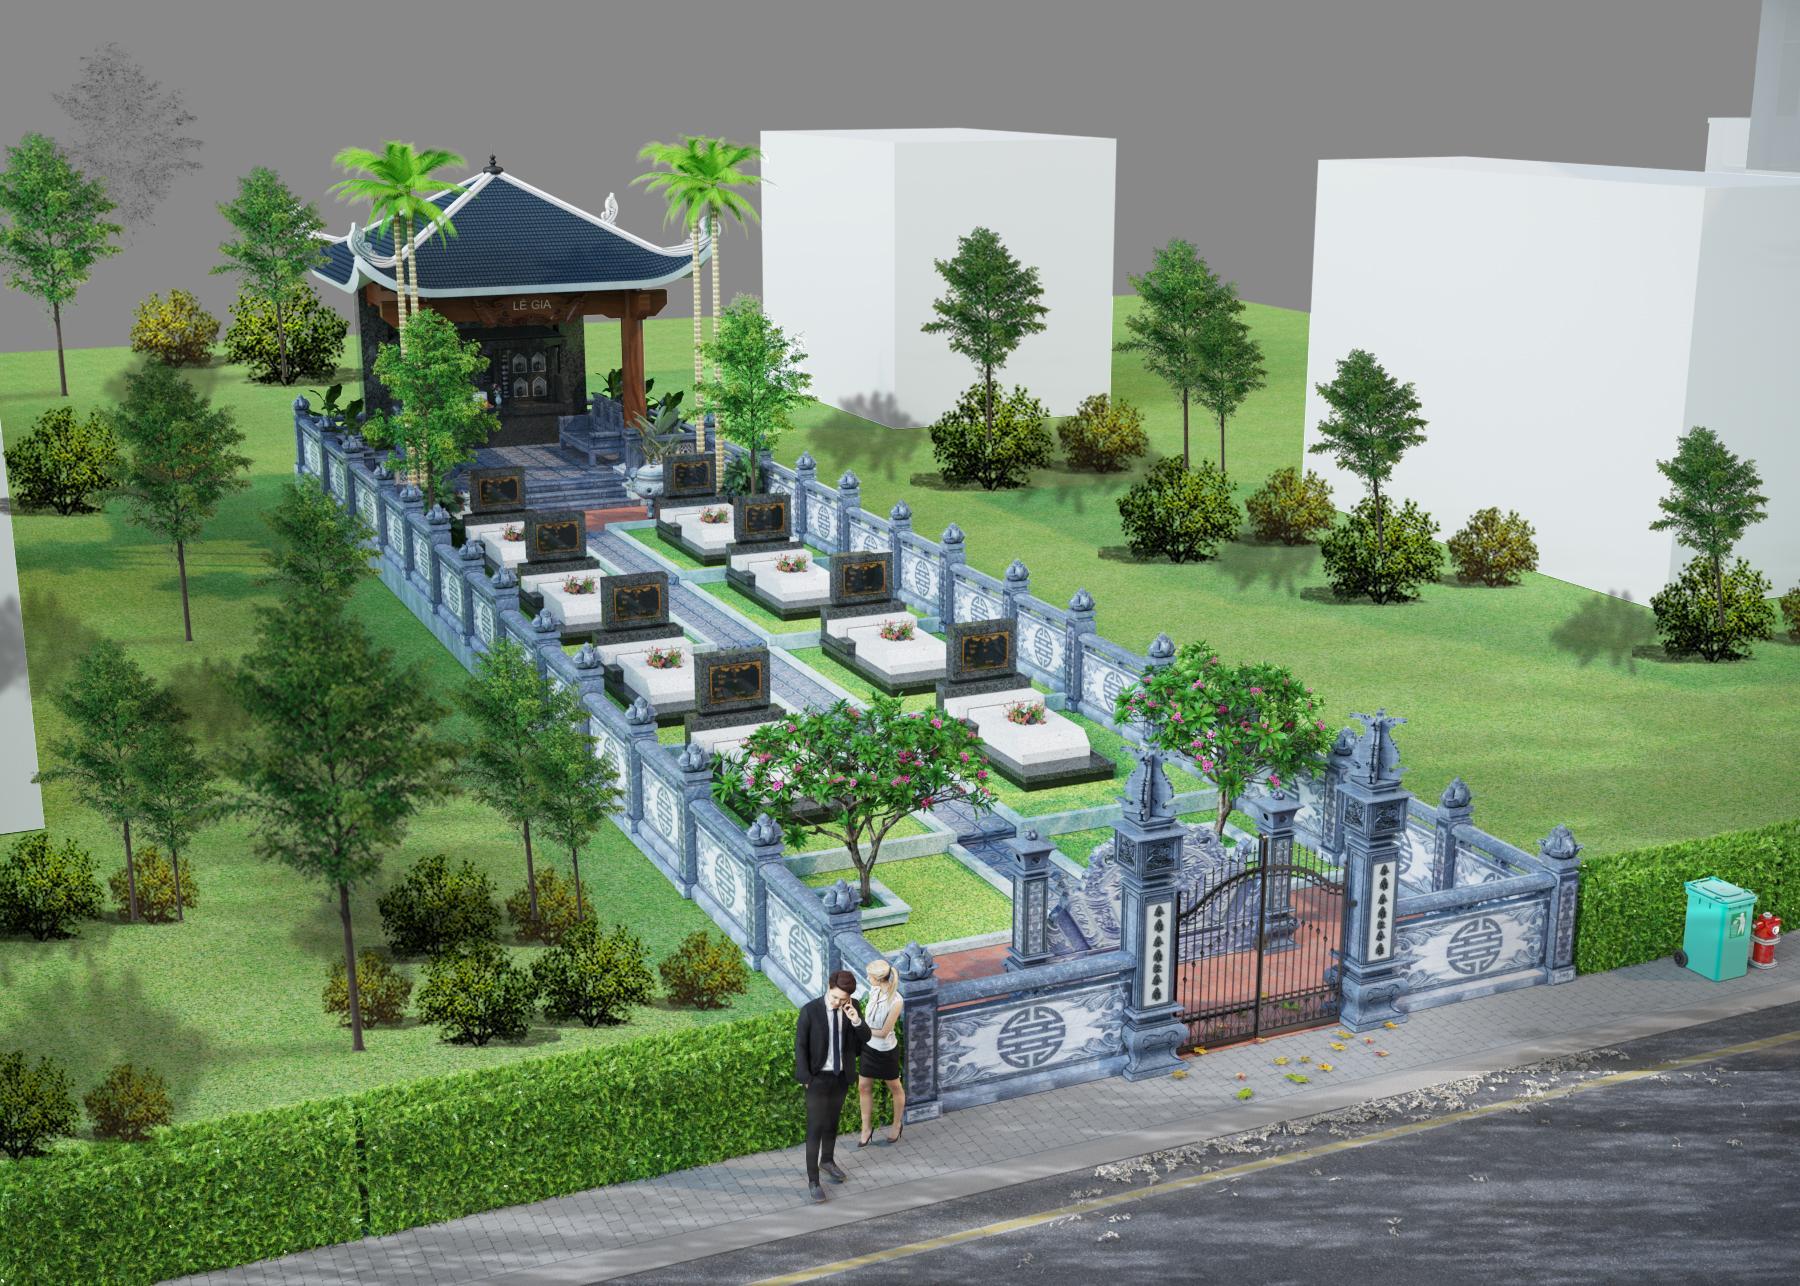 Bản vẽ nghĩa trang dòng họ - Khu lăng mộ đẹp nhất Việt Nam giúp giải đáp thắc mắc: Xây nghĩa trang gia đình phải xây những gì?